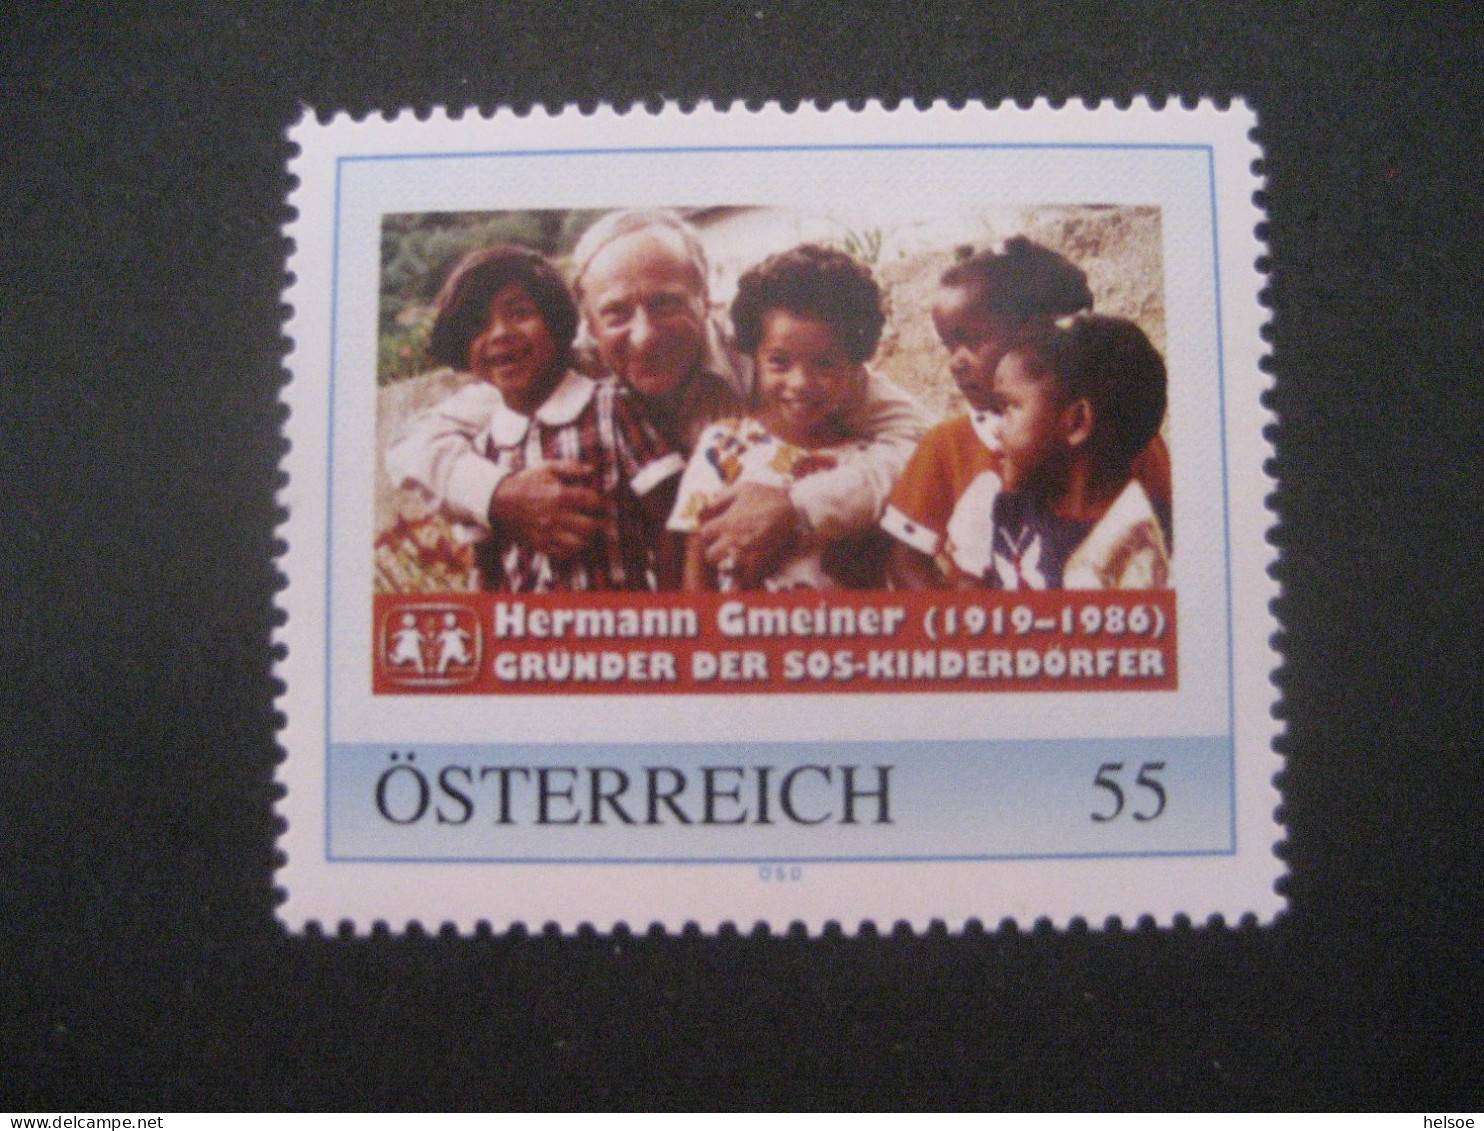 Österreich- PM 8010339, Hermann Gmeiner - Gründer Der SOS Kinderdörfer ** - Personalisierte Briefmarken